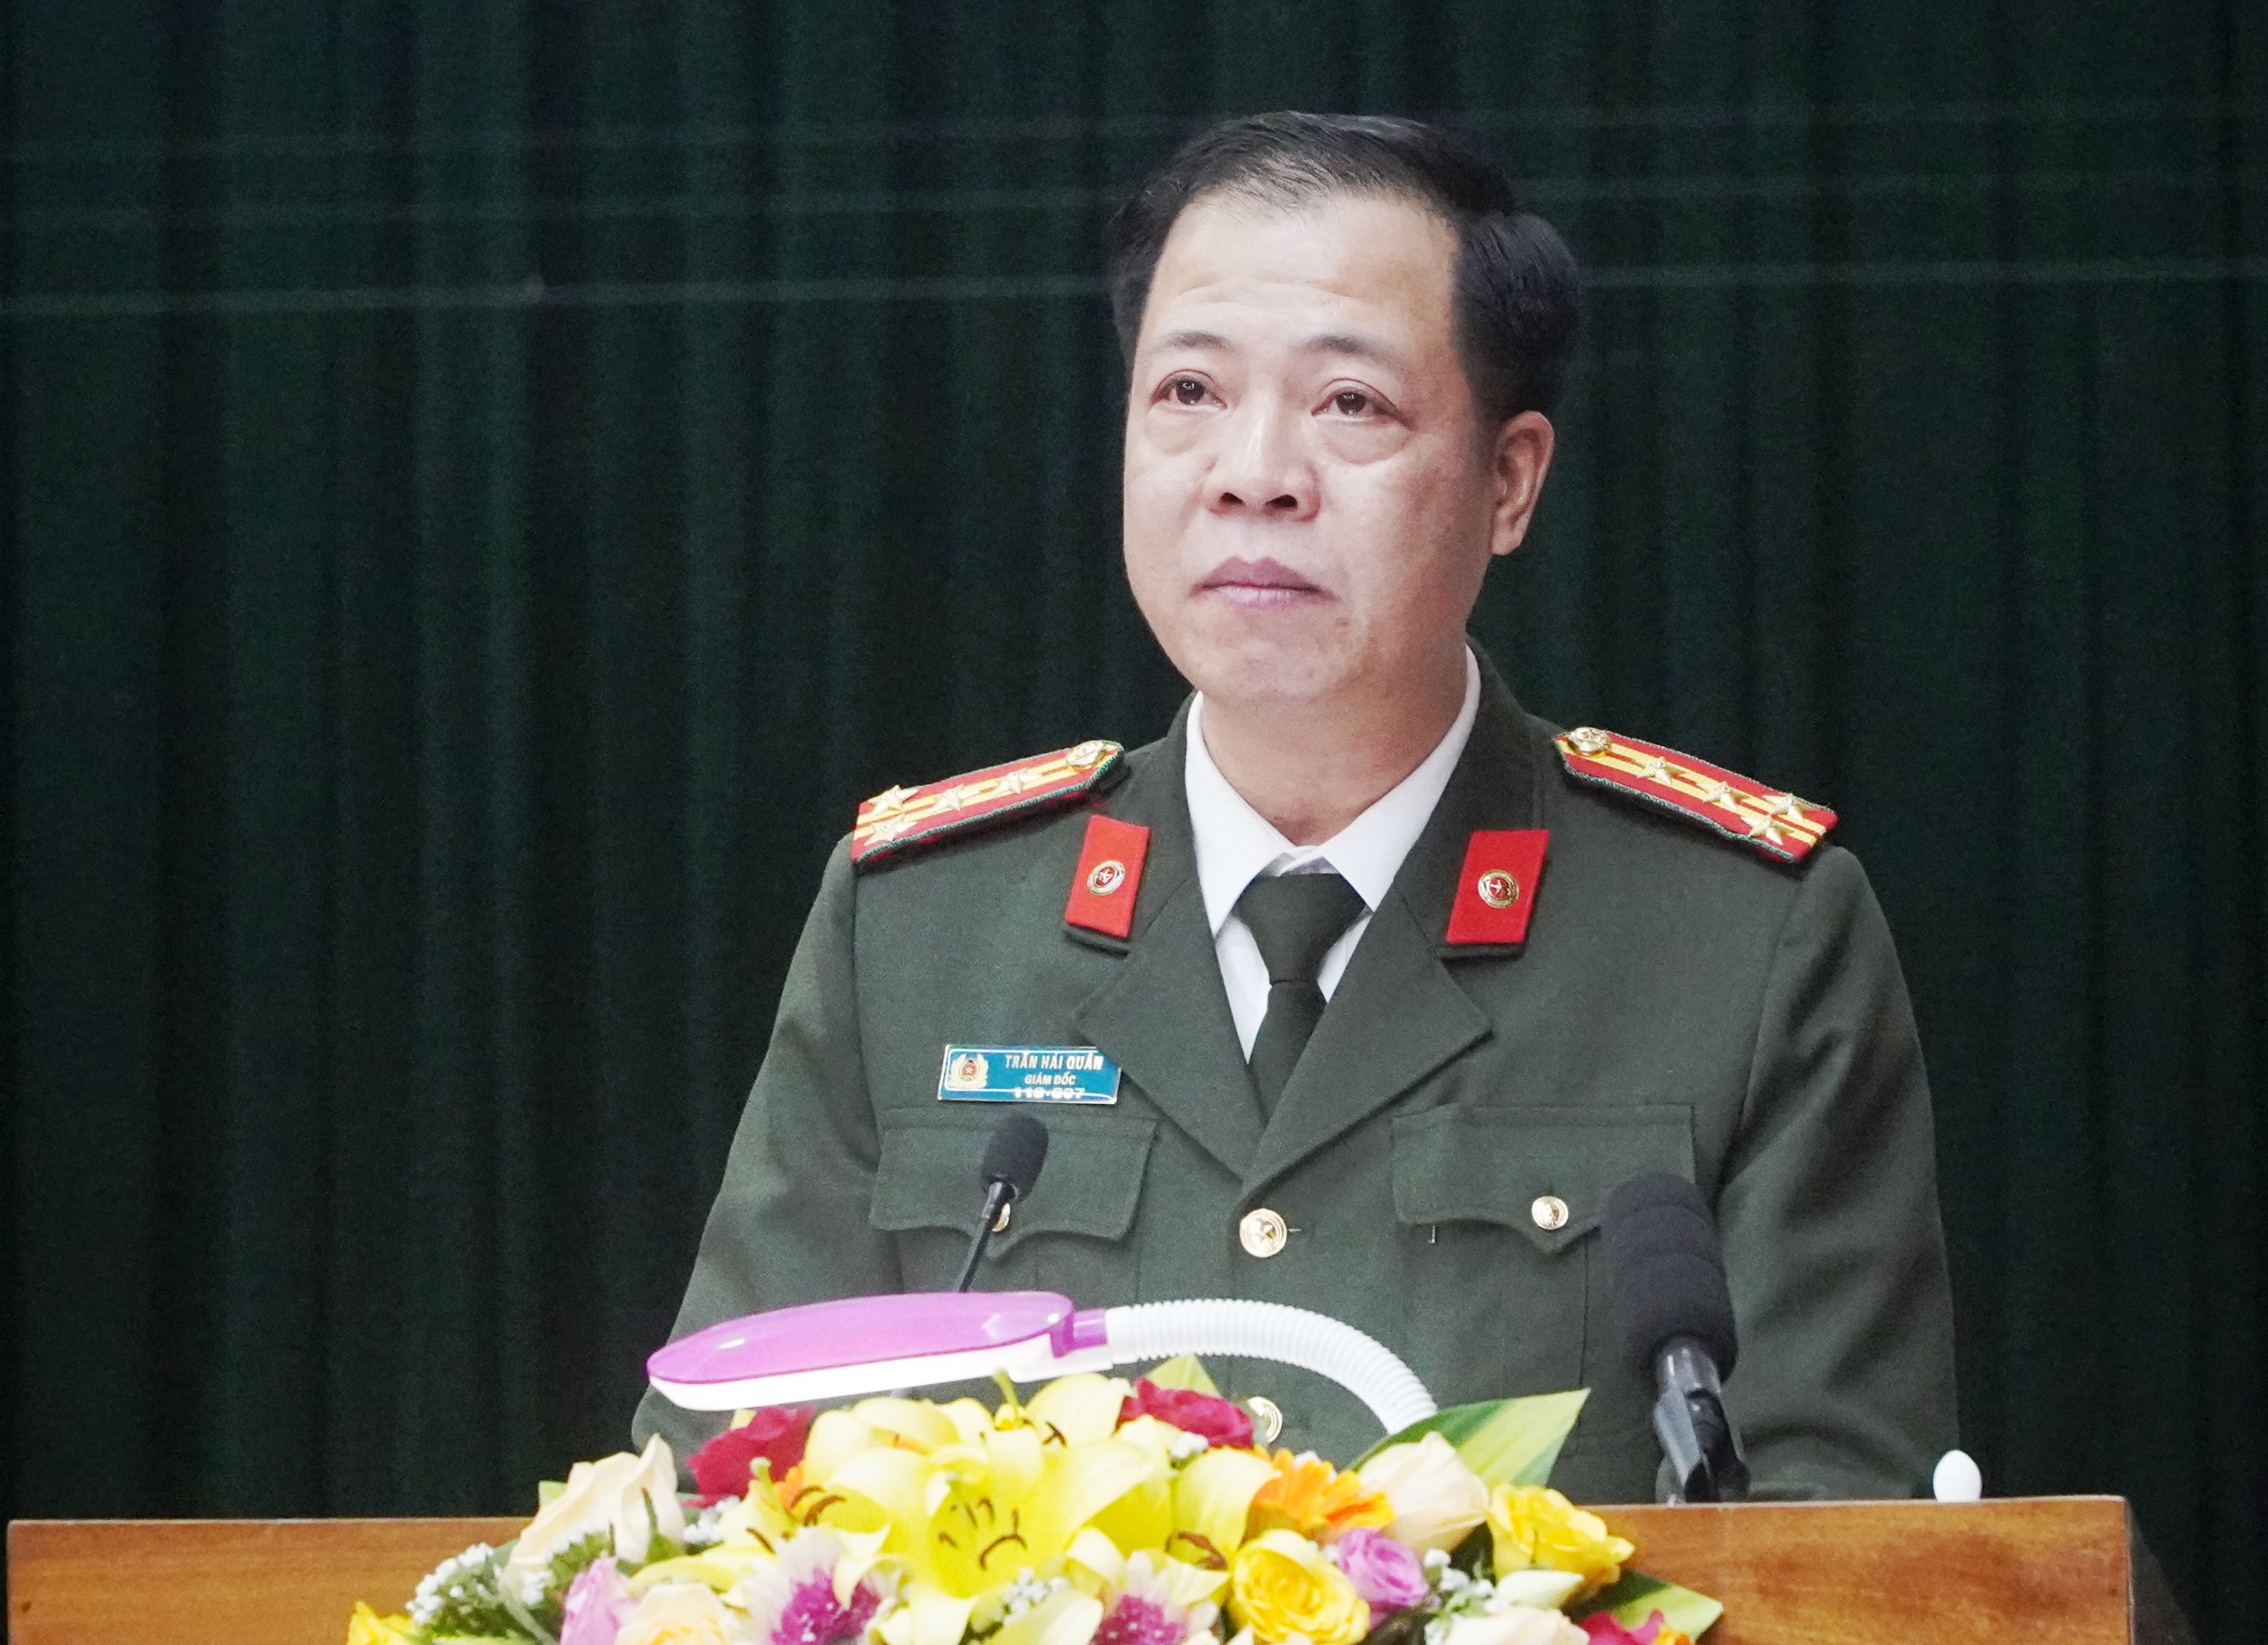 Đồng chí đại tá Trần Hải Quân, Ủy viên Ban Thường vụ Tỉnh ủy, Giám đốc Công an tỉnh trả lời chất vấn